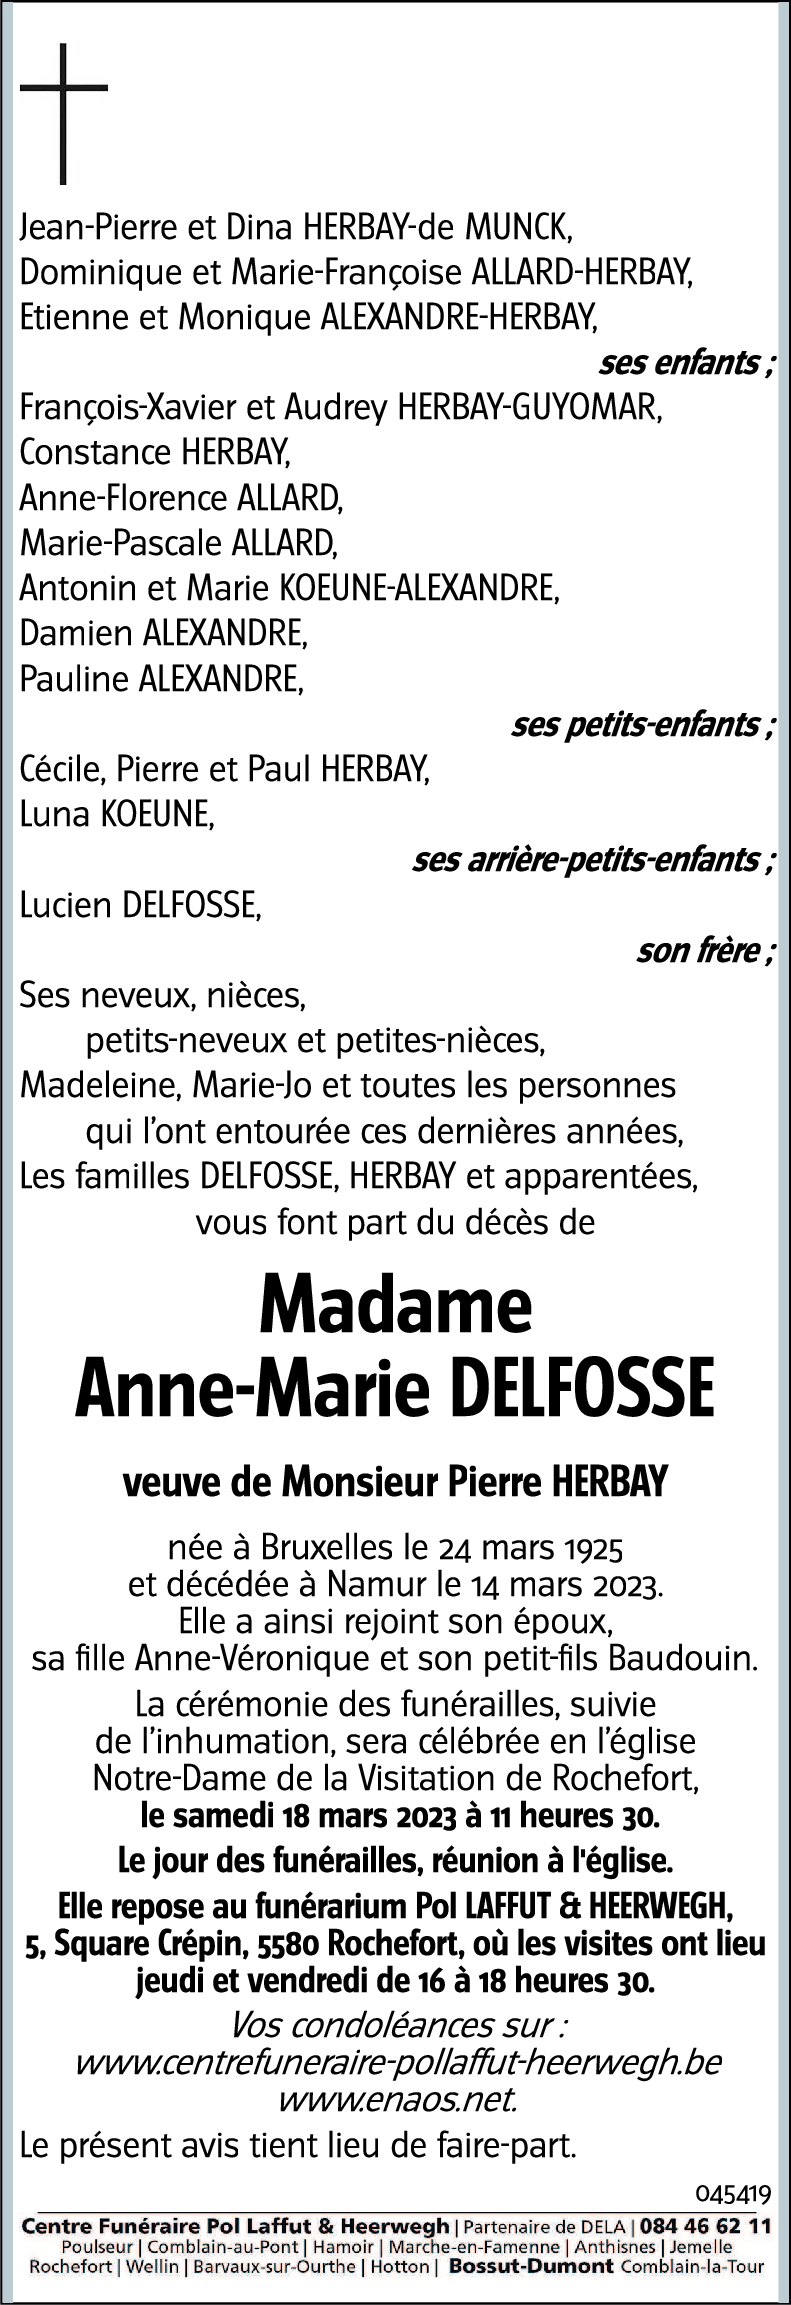 Anne-Marie DELFOSSE